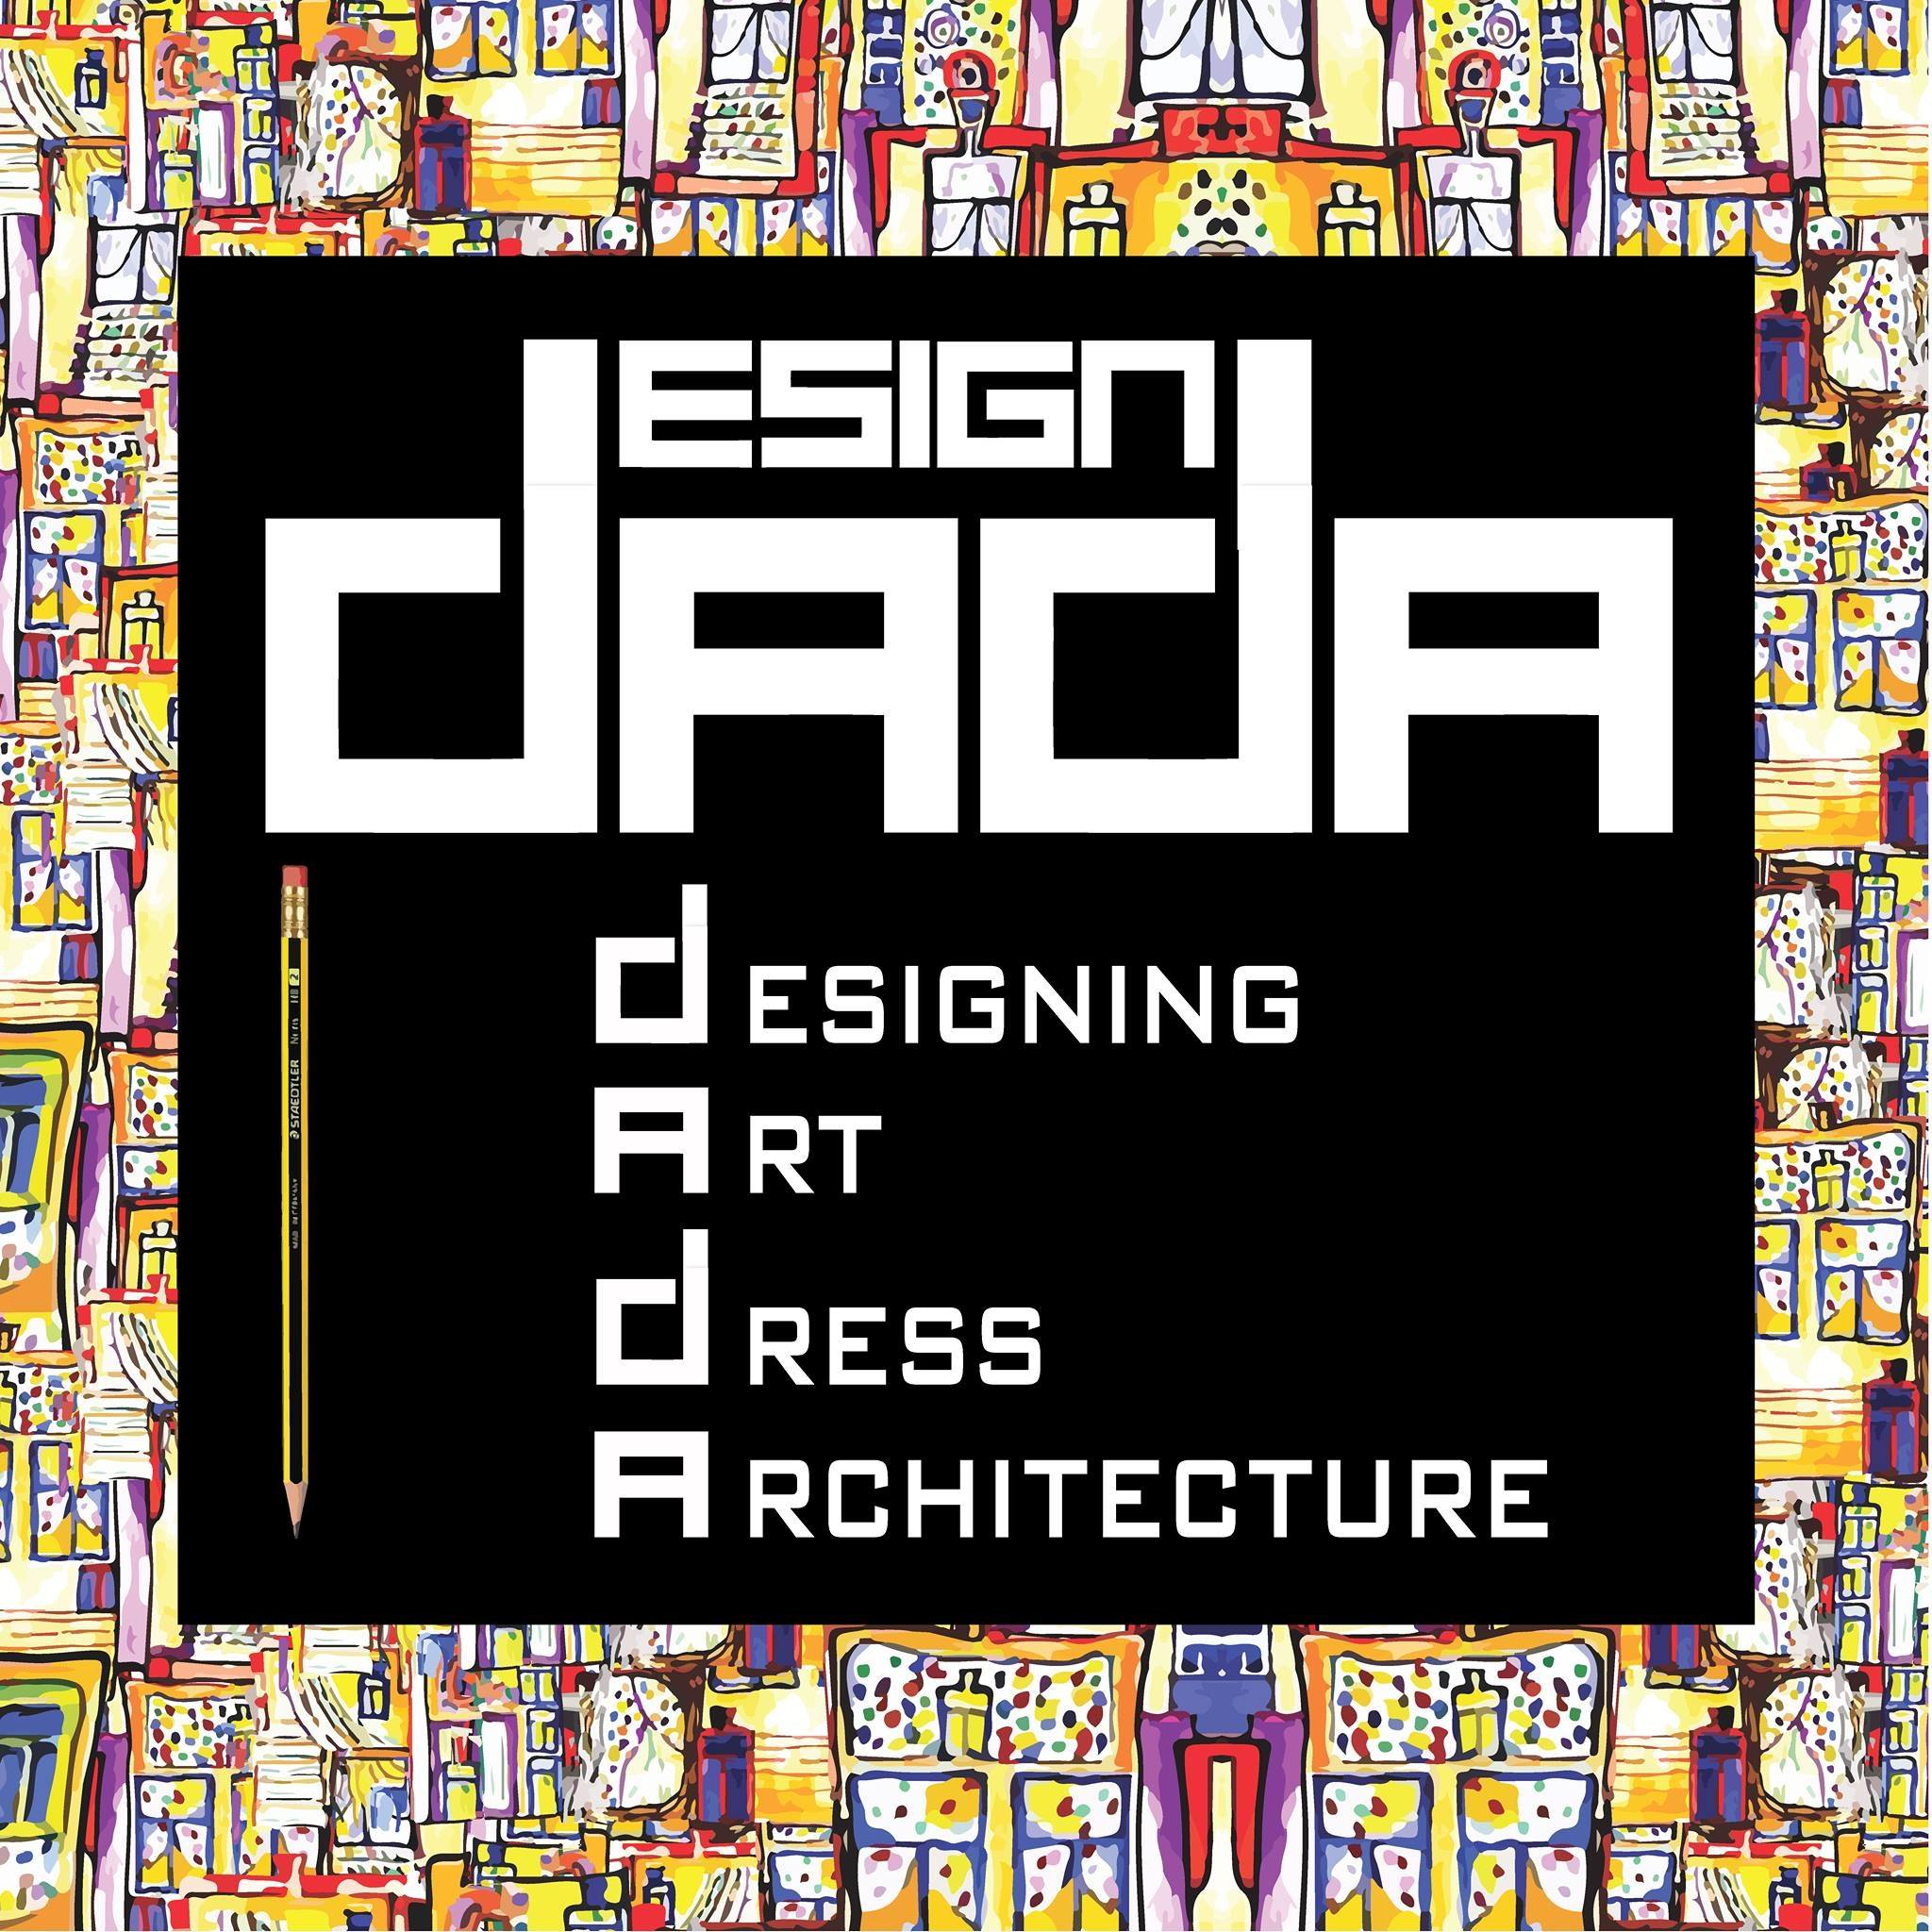 Dada design